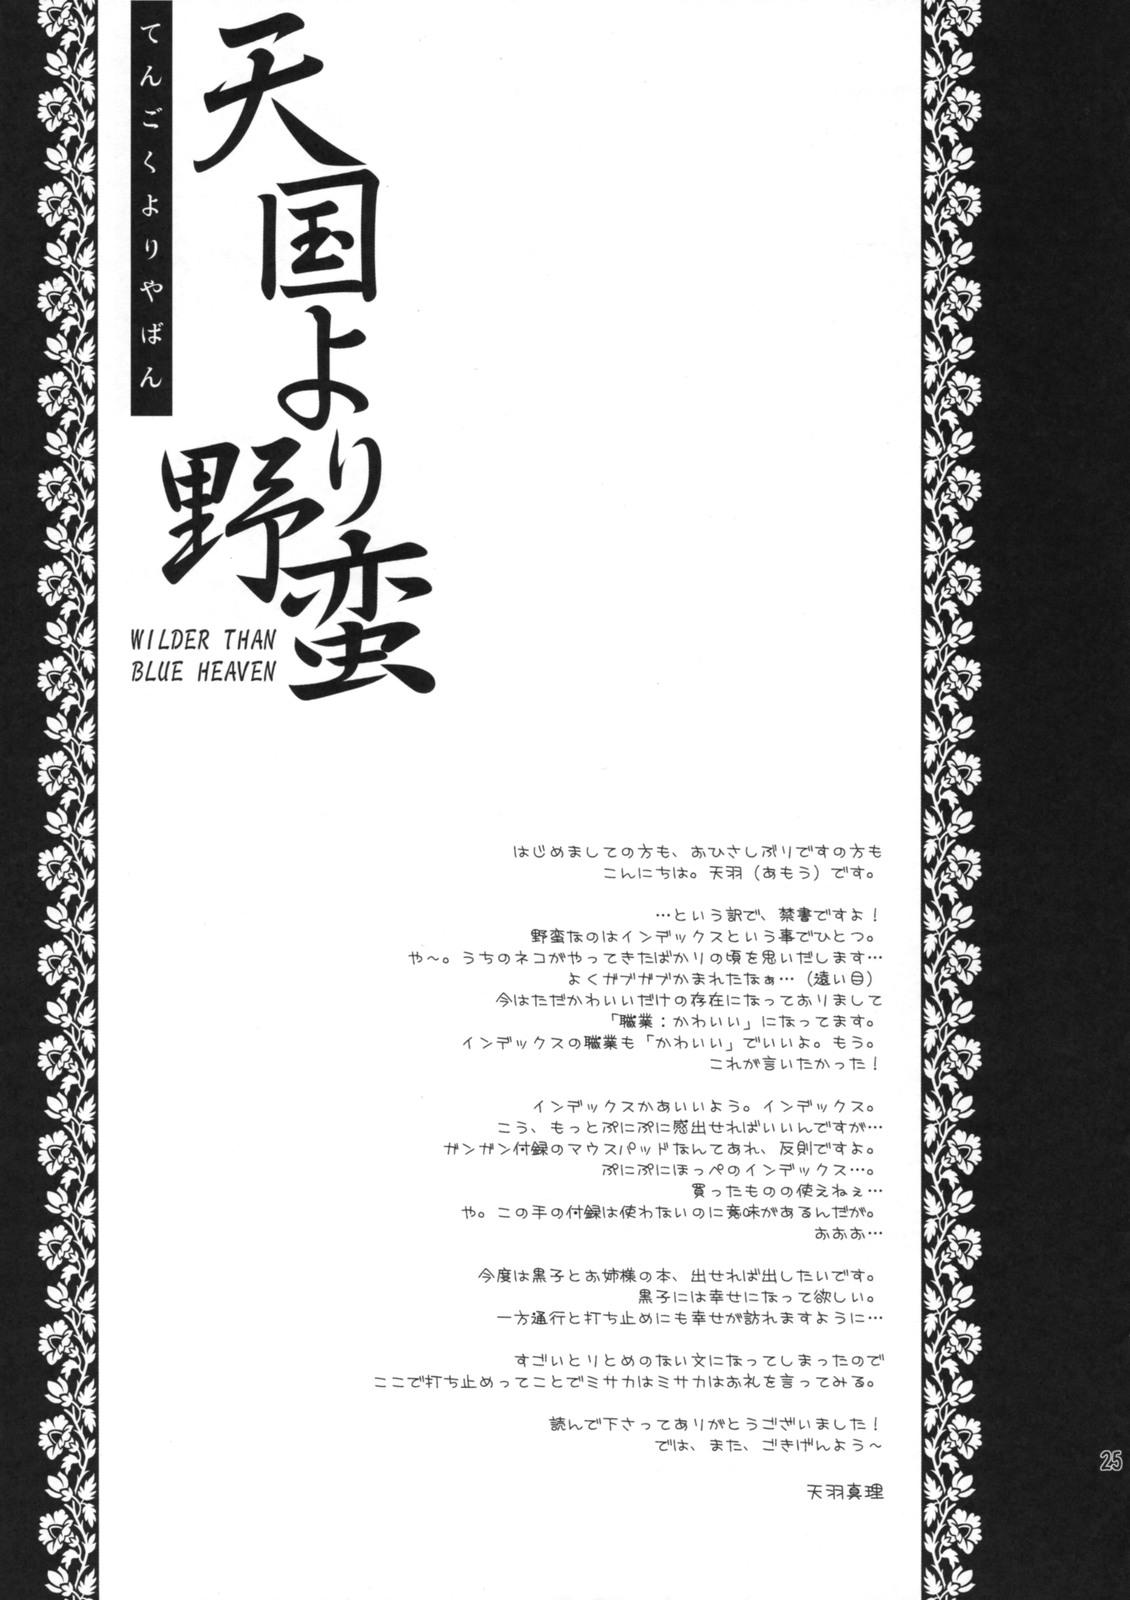 Prima Tengoku yori Yaban - WILDER THAN BLUE HEAVEN - Toaru majutsu no index Blowjob Porn - Page 24